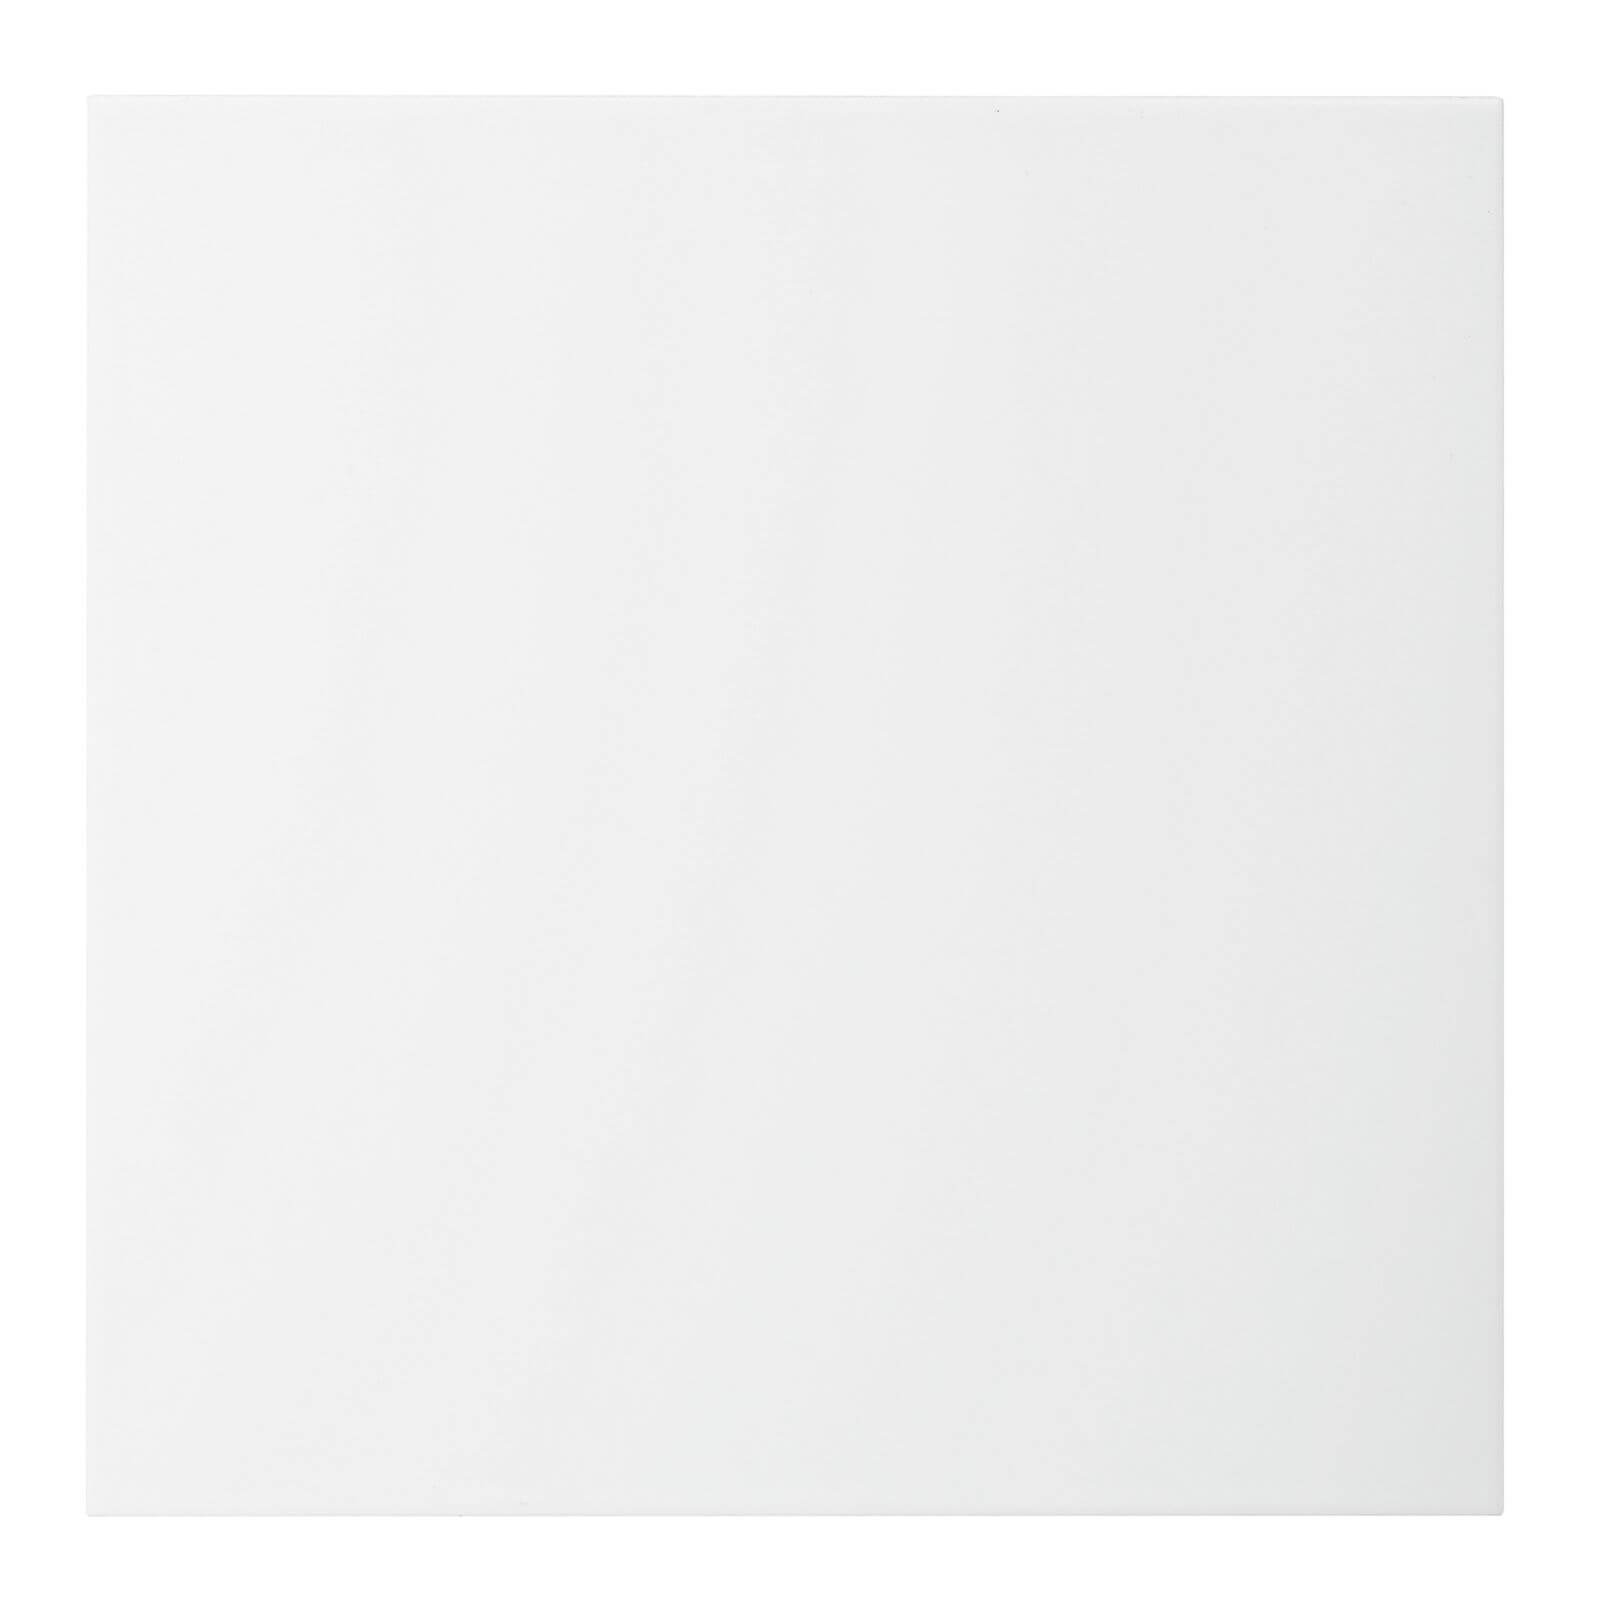 Contrast Satin Ceramic Floor Tiles 330 x 330mm 9 Pack - White